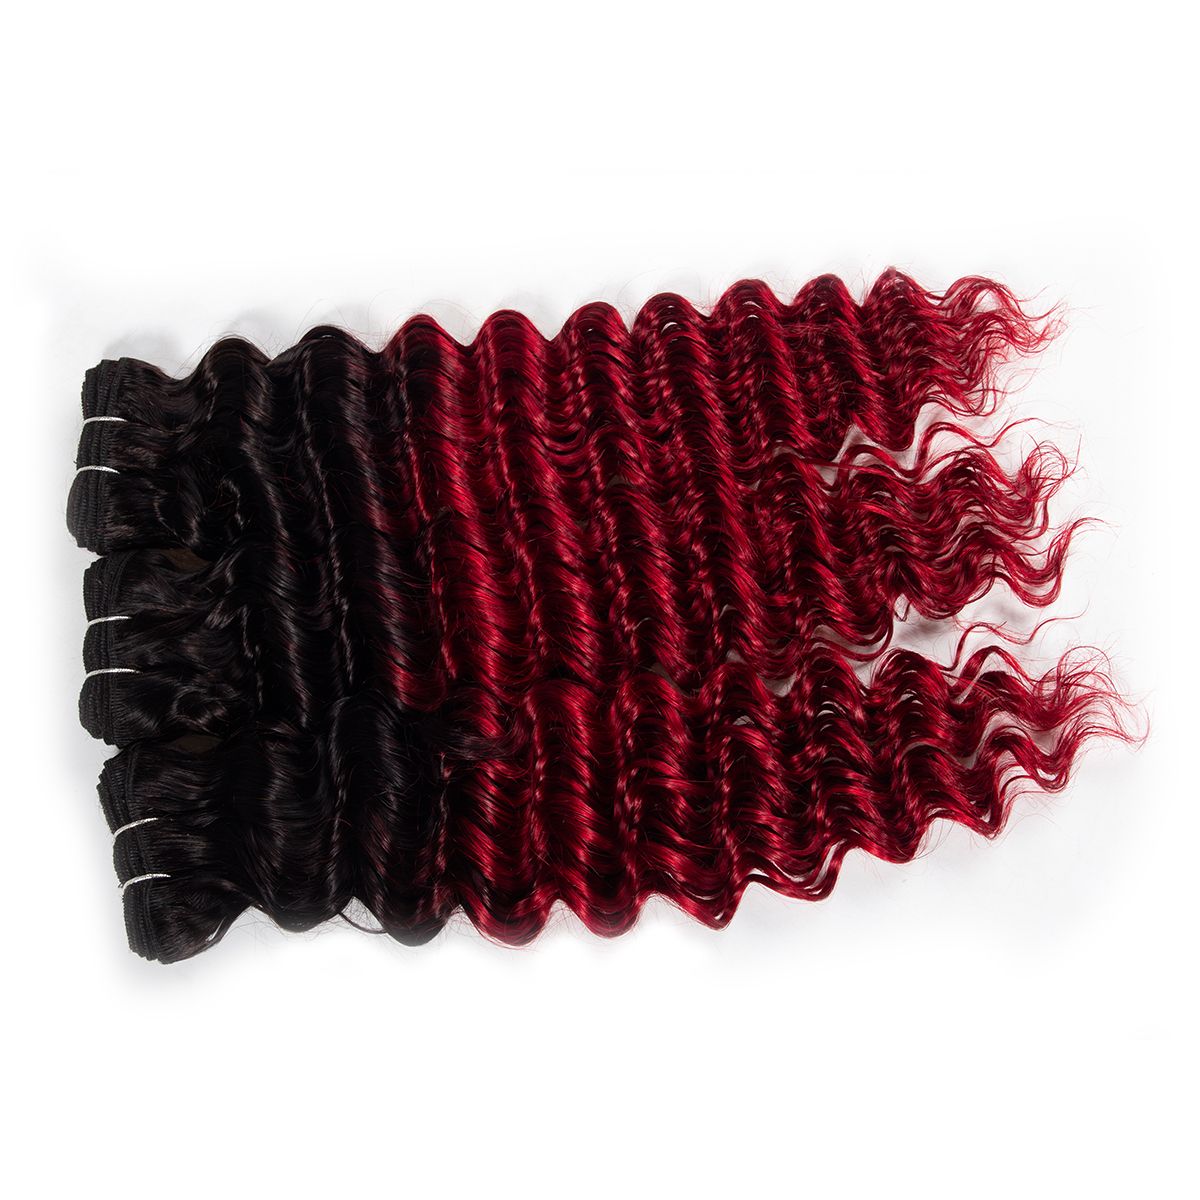 1b-red deep wave hair bundles 2